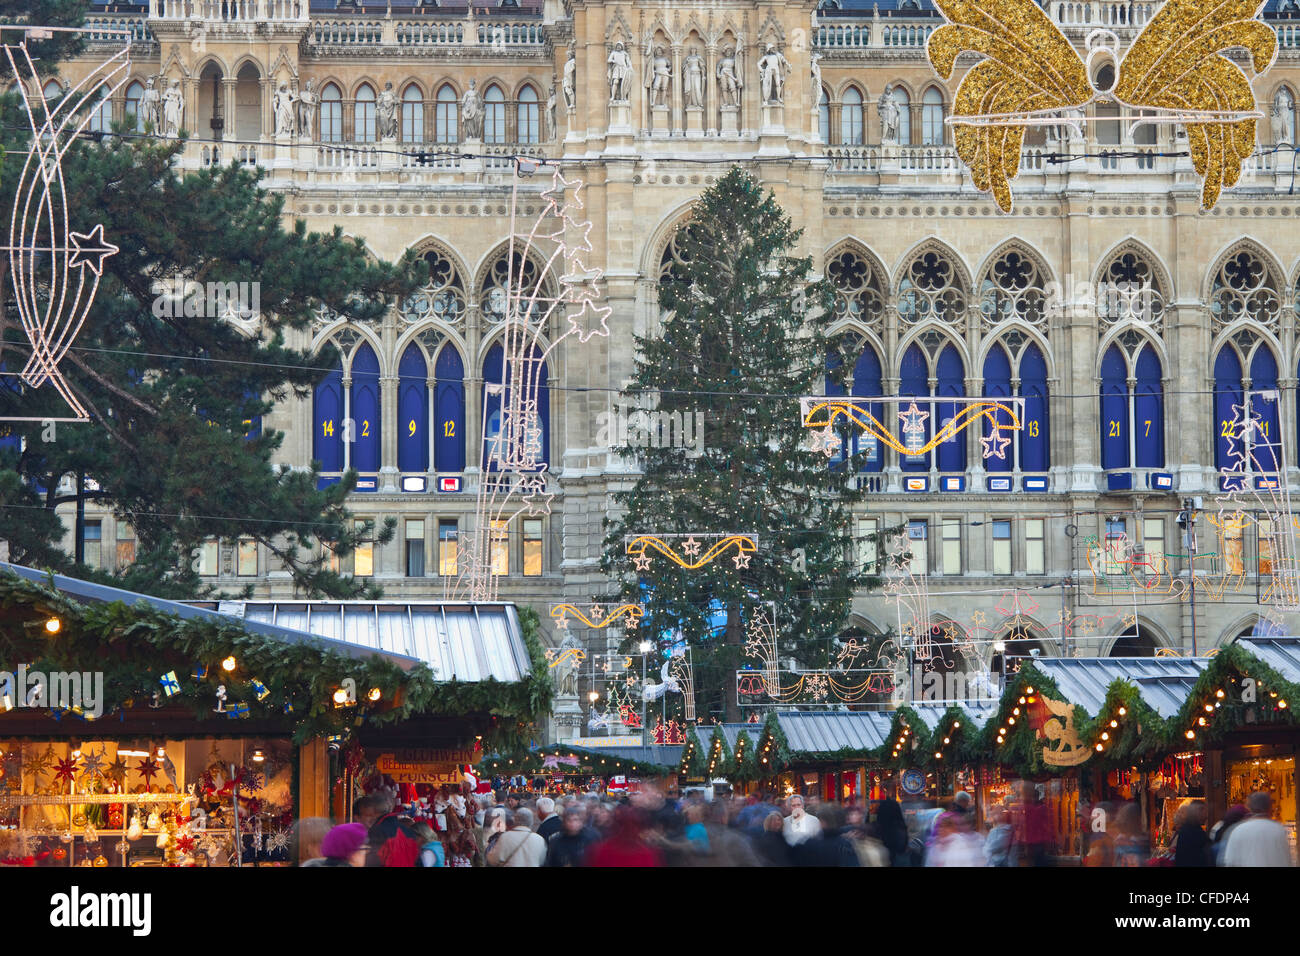 Christmas market at Rathausplatz square, Vienna, Austria, Europe Stock Photo